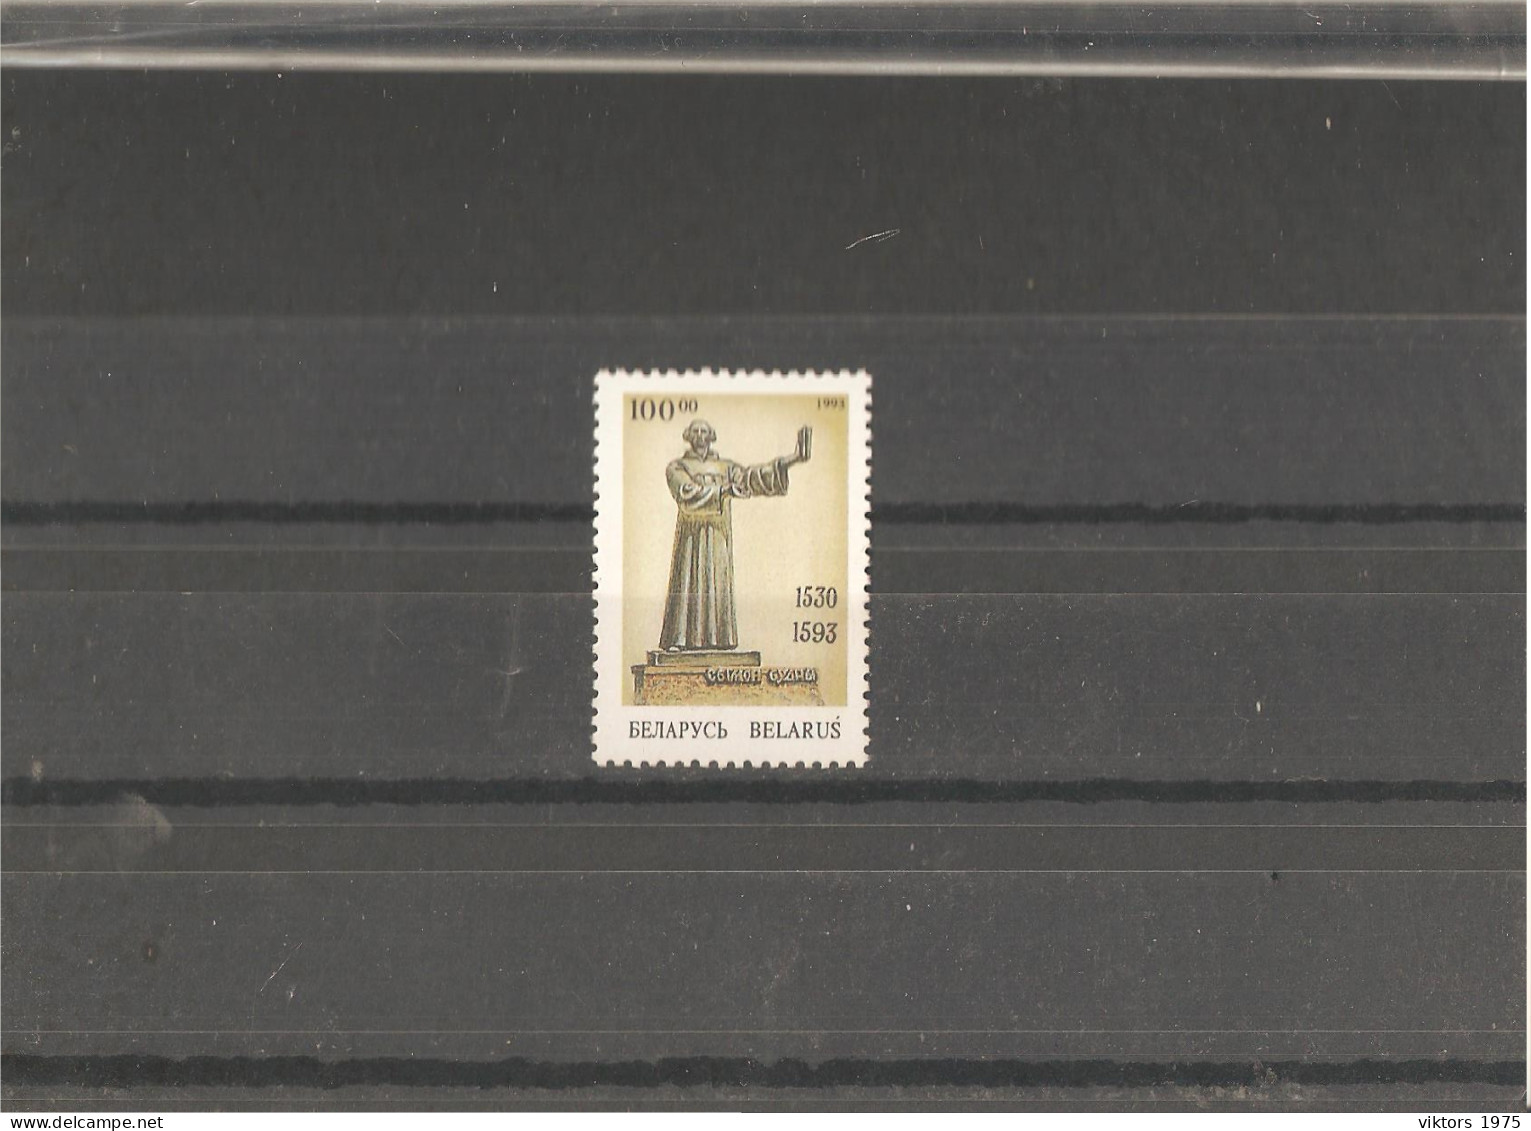 MNH Stamp Nr.42 In MICHEL Catalog - Belarus